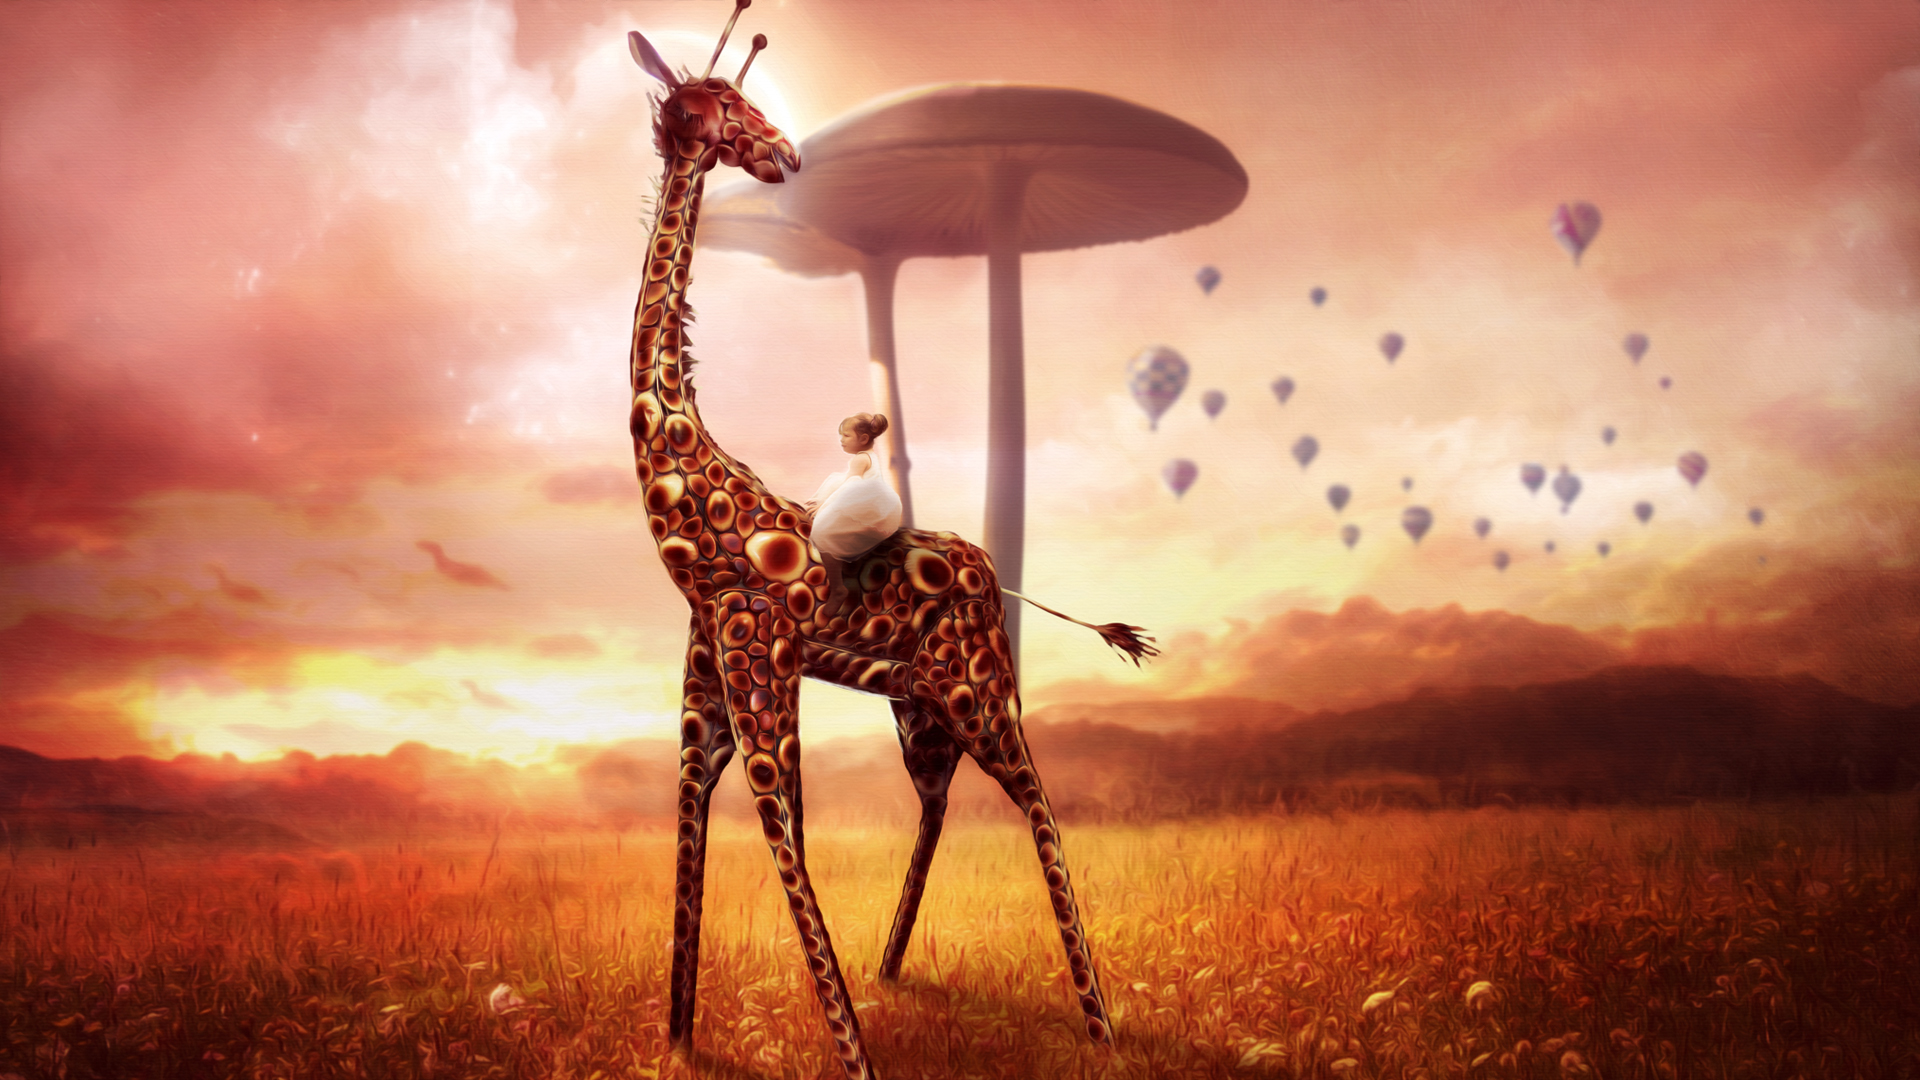 Giraffe Dream Wallpapers | Wallpapers HD